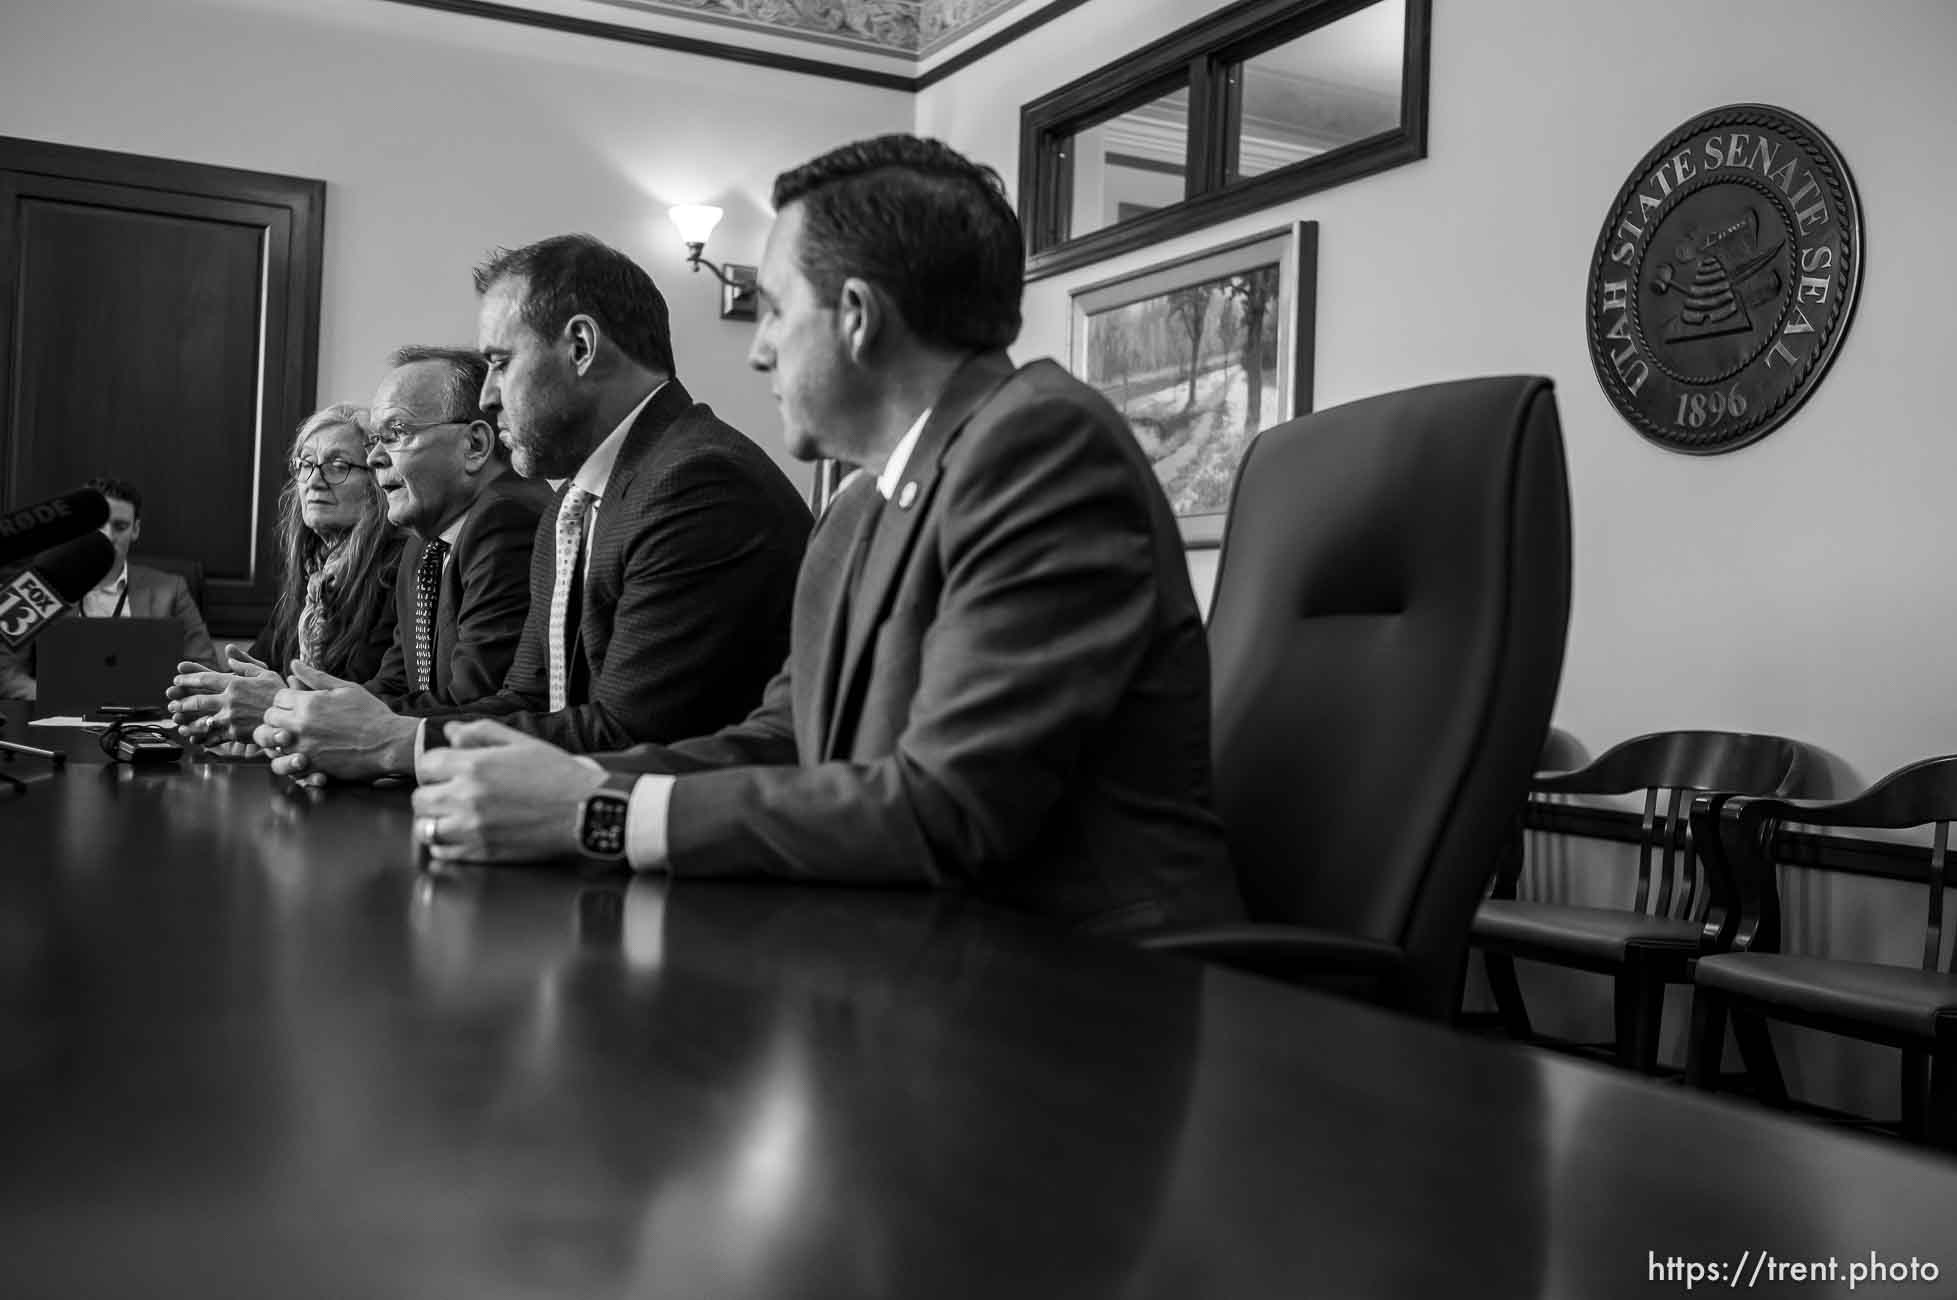 Utah House and Senate leadership talk on Natalie Cline censure